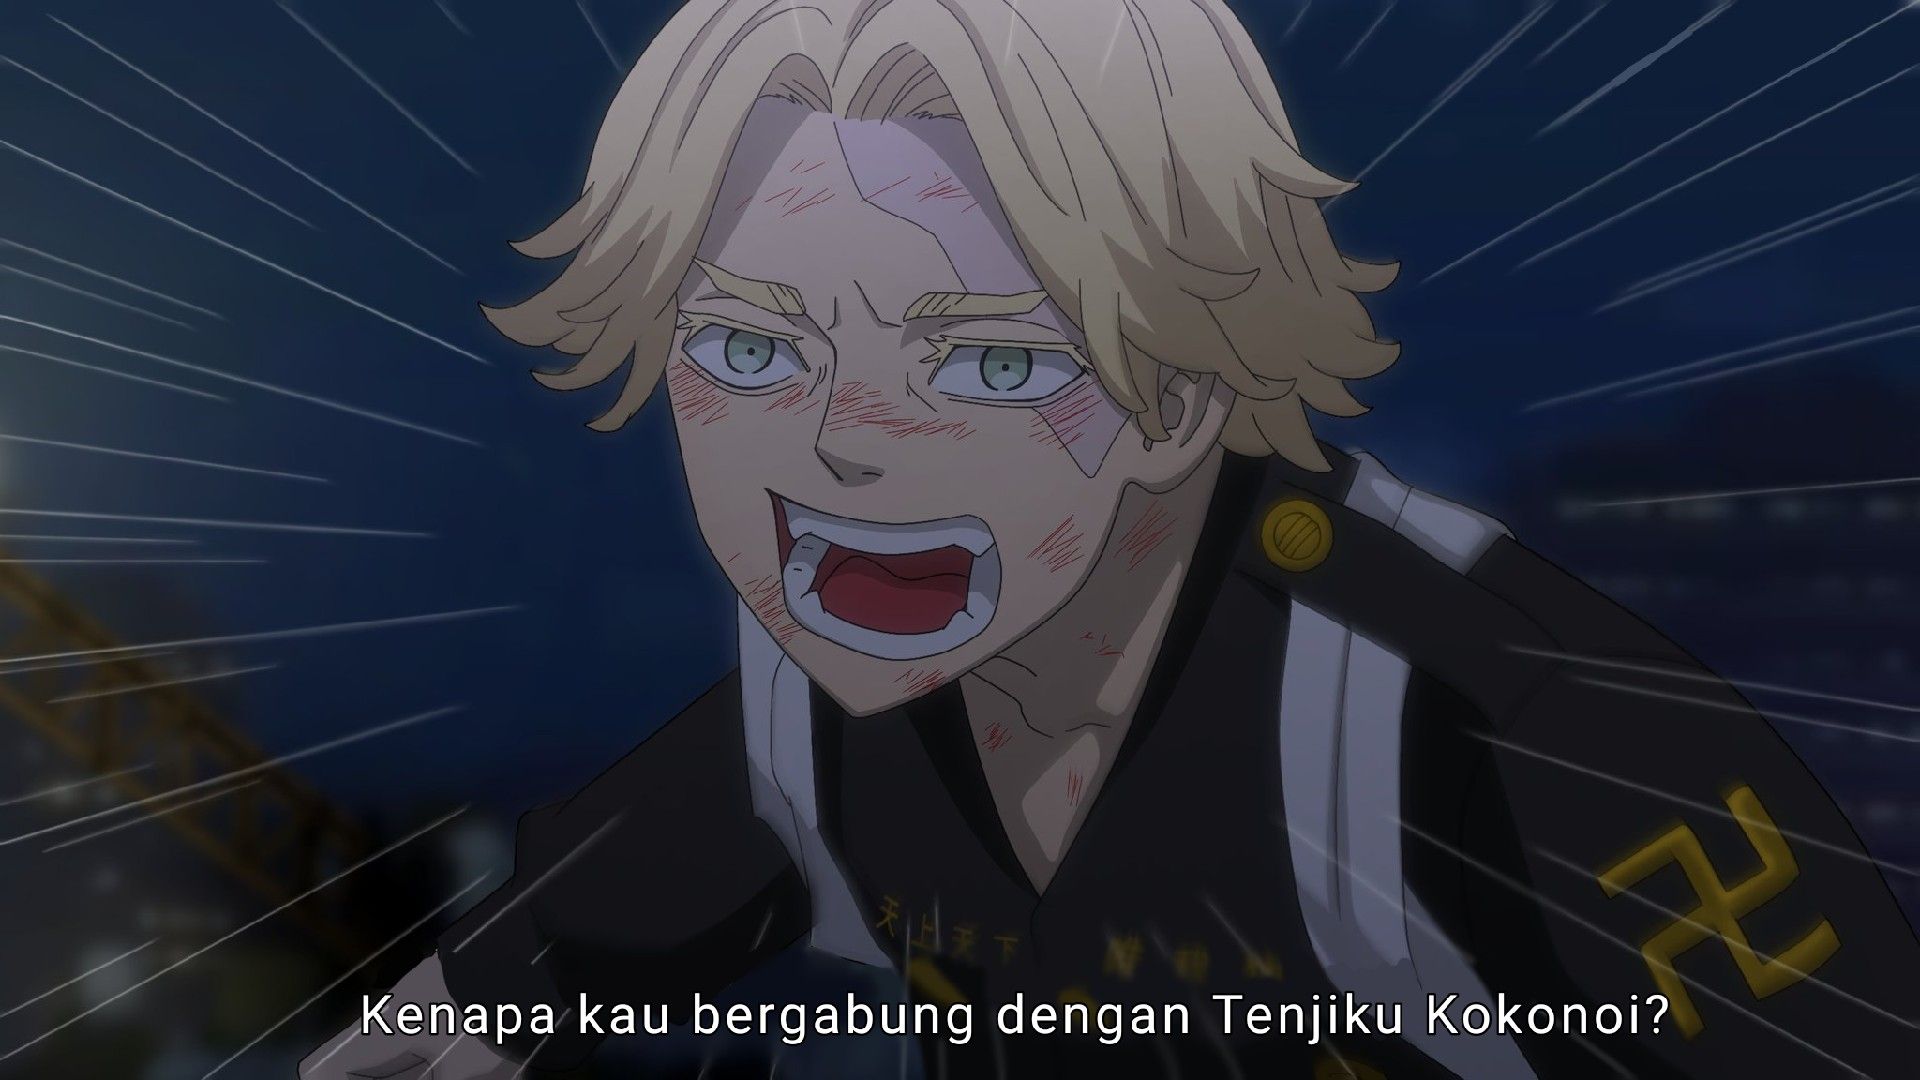 Tokyo Revengers Season 3 (AMV) Toman vs Tenjiku - Till I Collapse - BiliBili